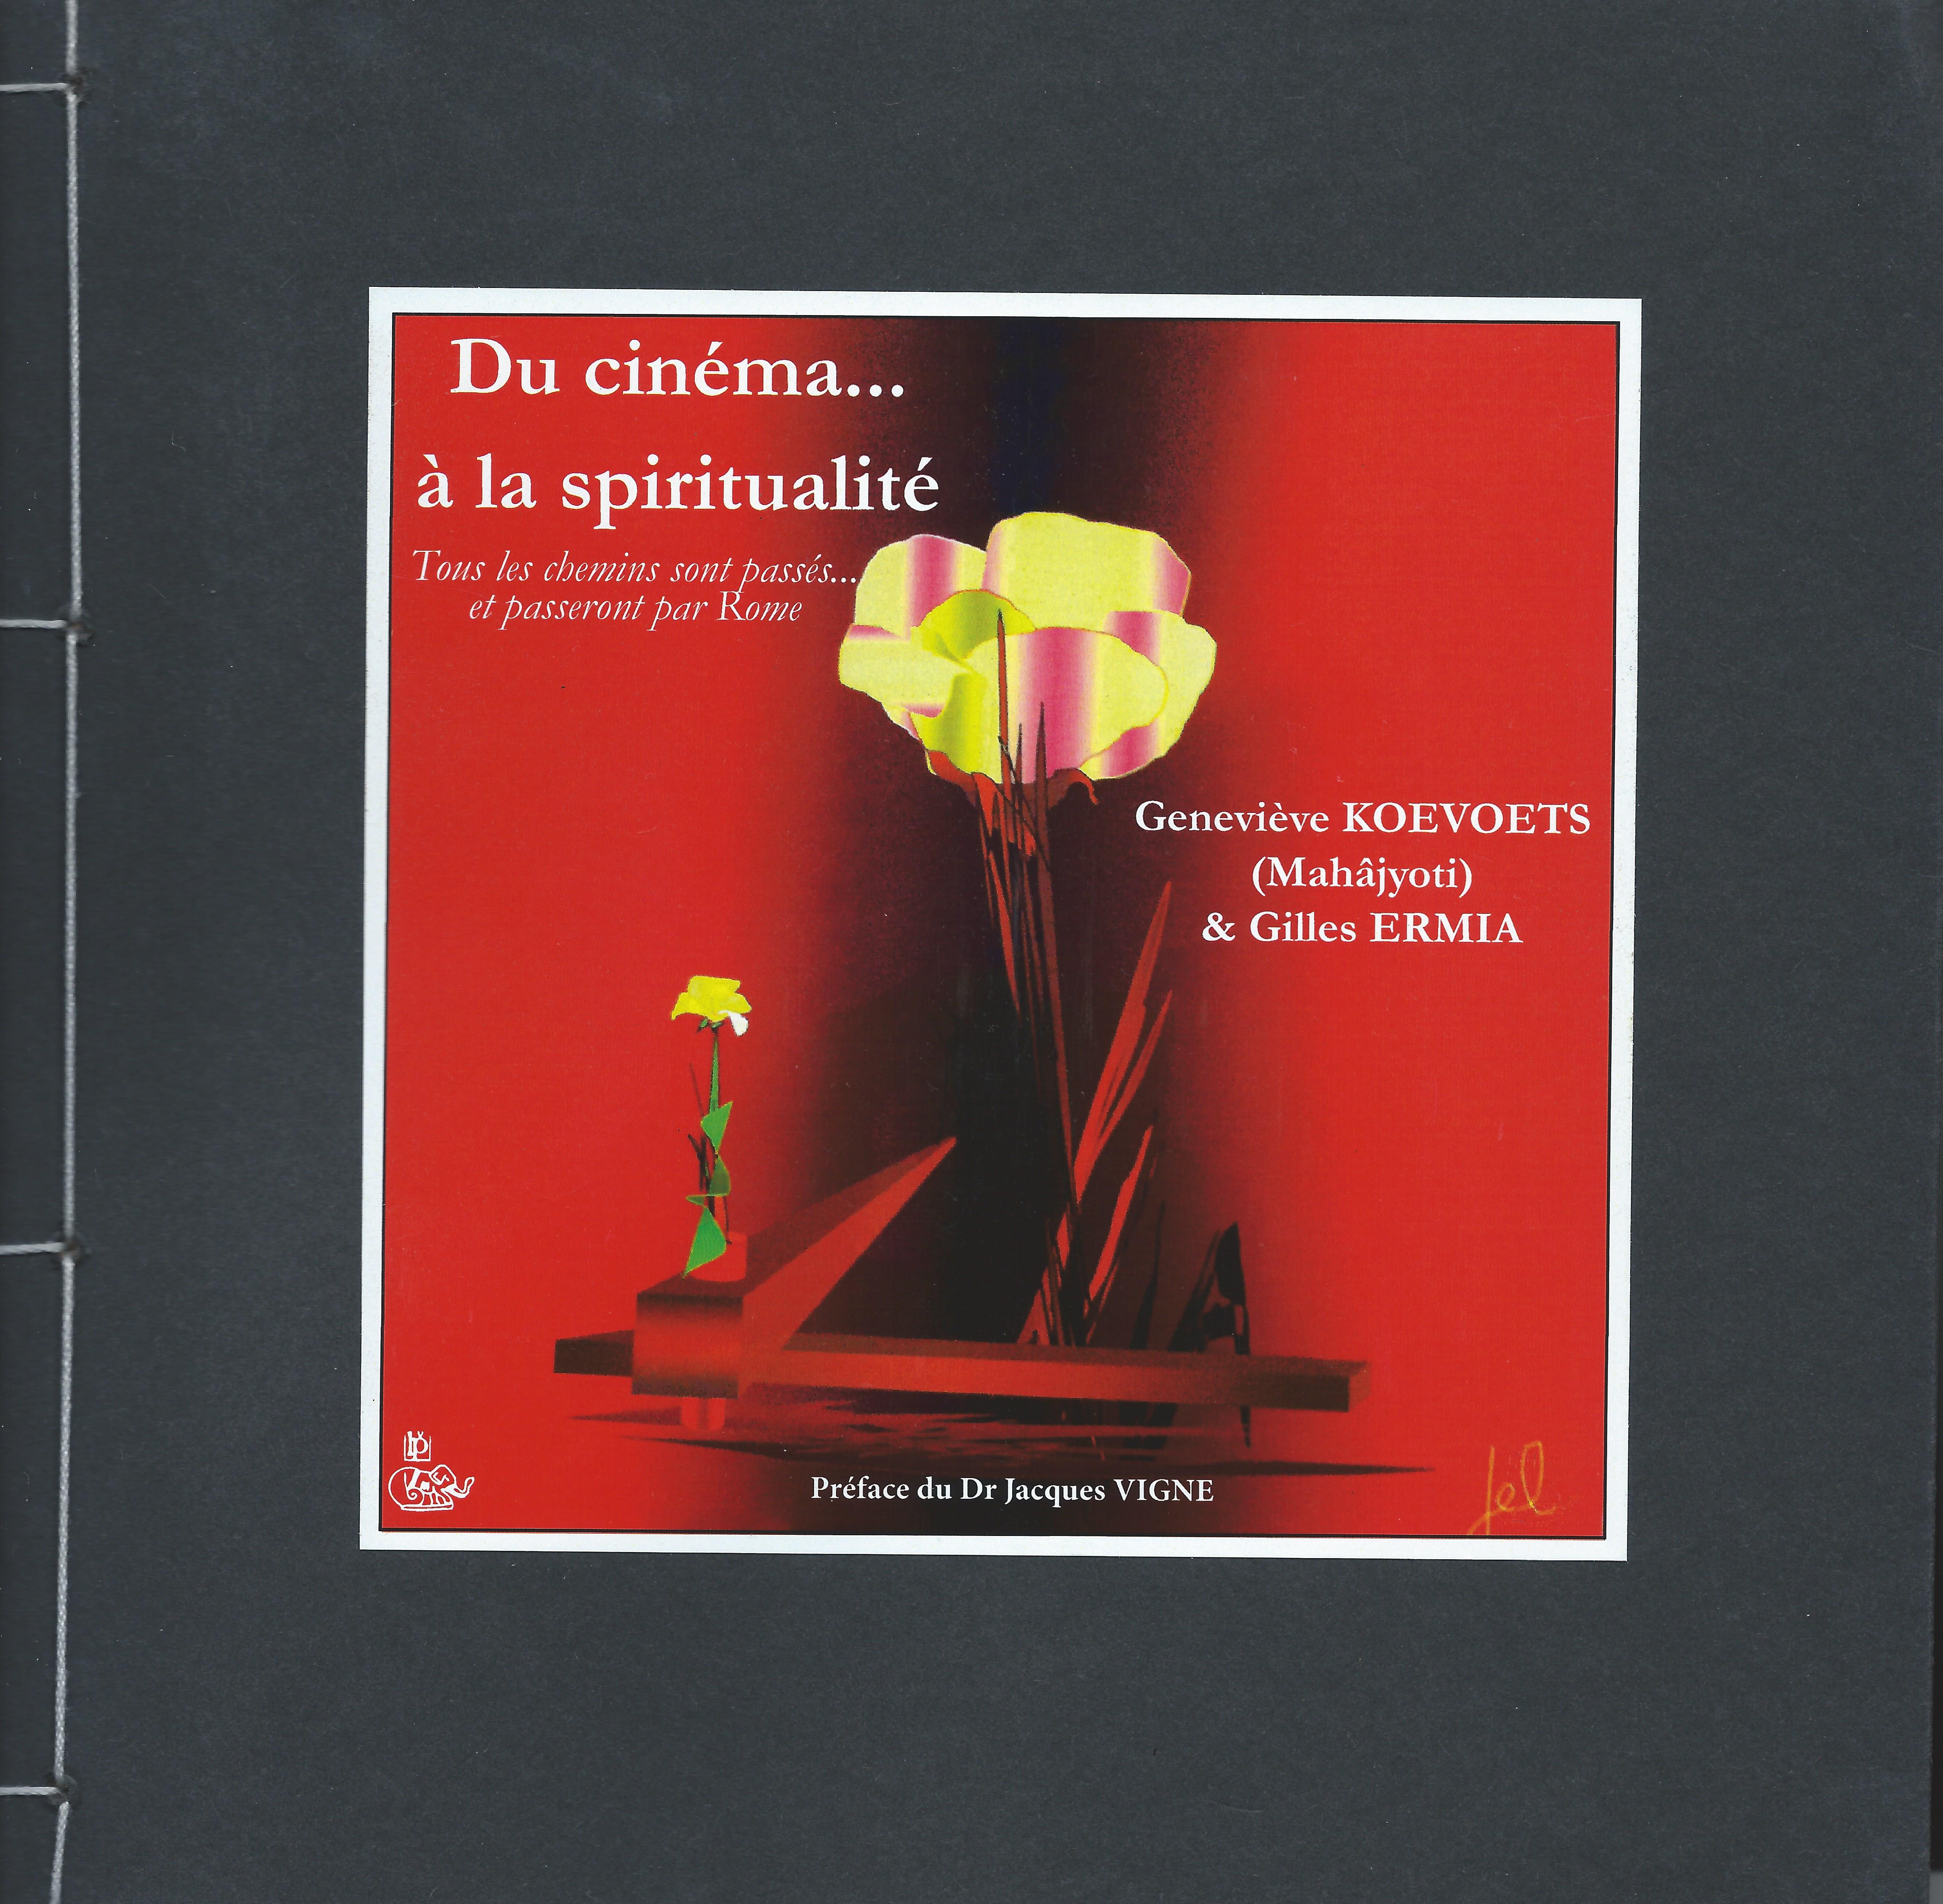 Texte de présentation du livre 'Du Cinéma...à la Spiritualité' de Geneviève KOEVOETS (Mahâjyoti) et Gilles ERMIA